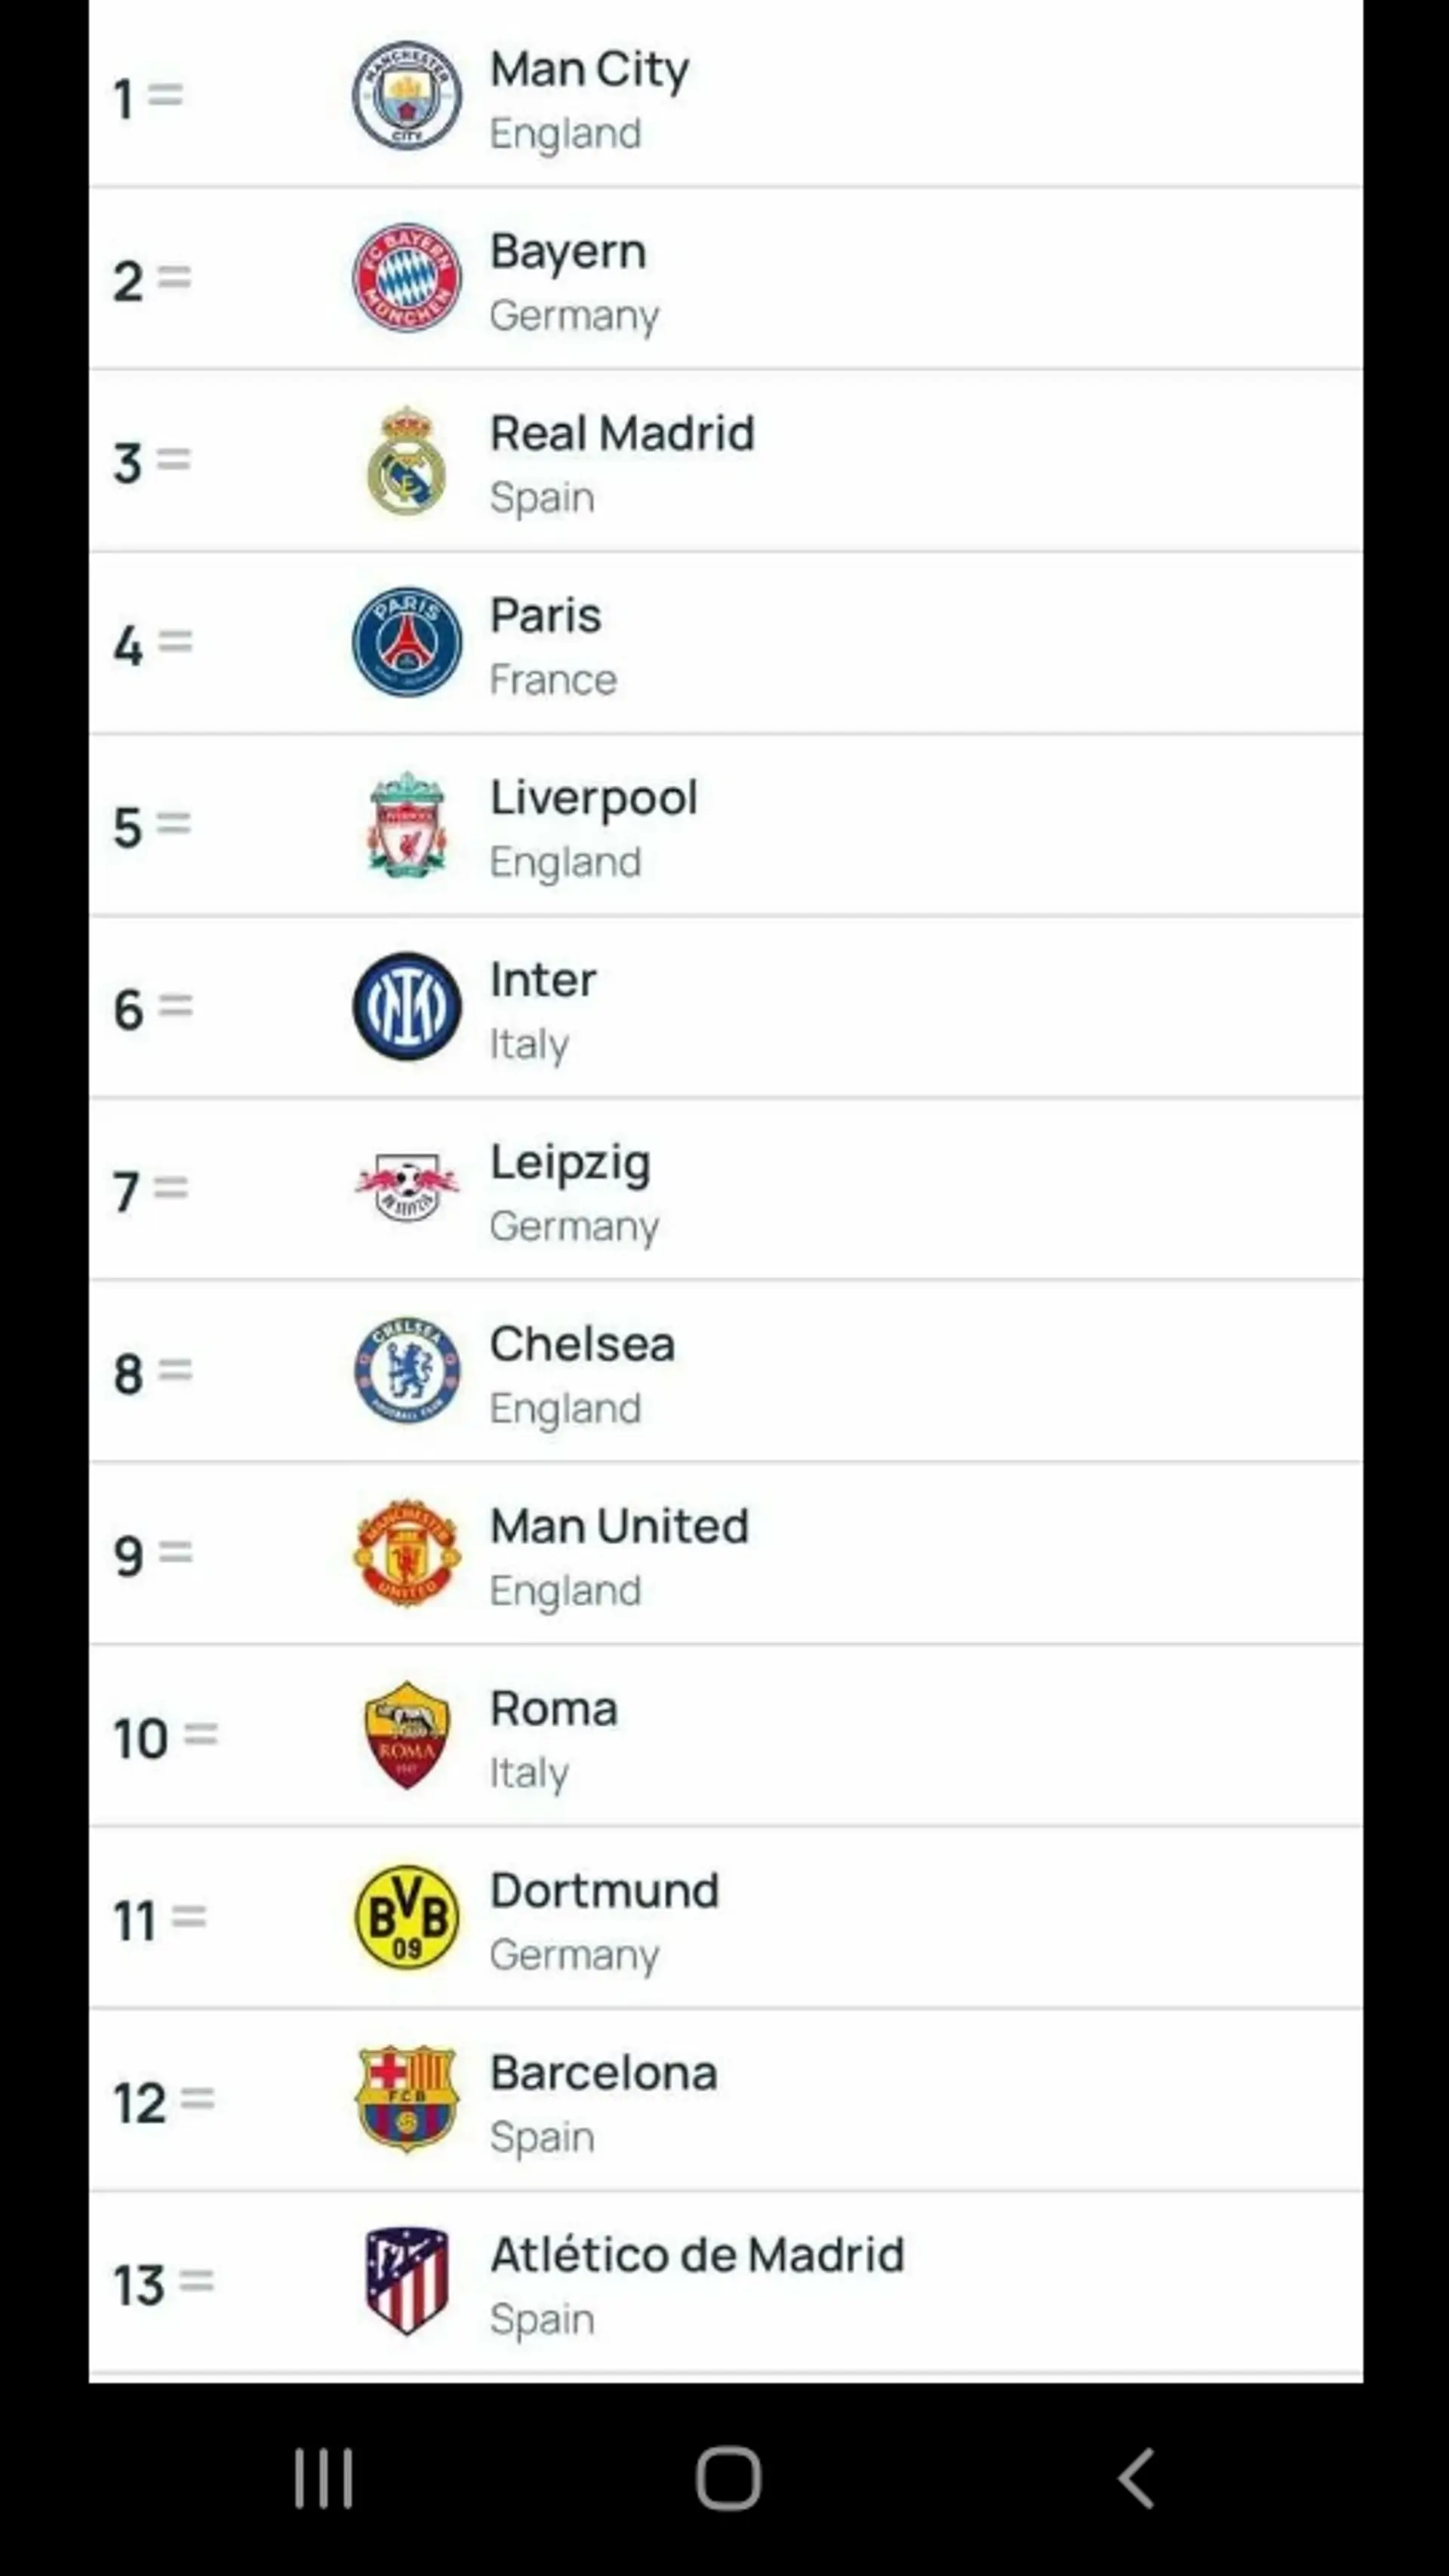 Barcelona puesto #12 en Ránking de Clubes de la UEFA